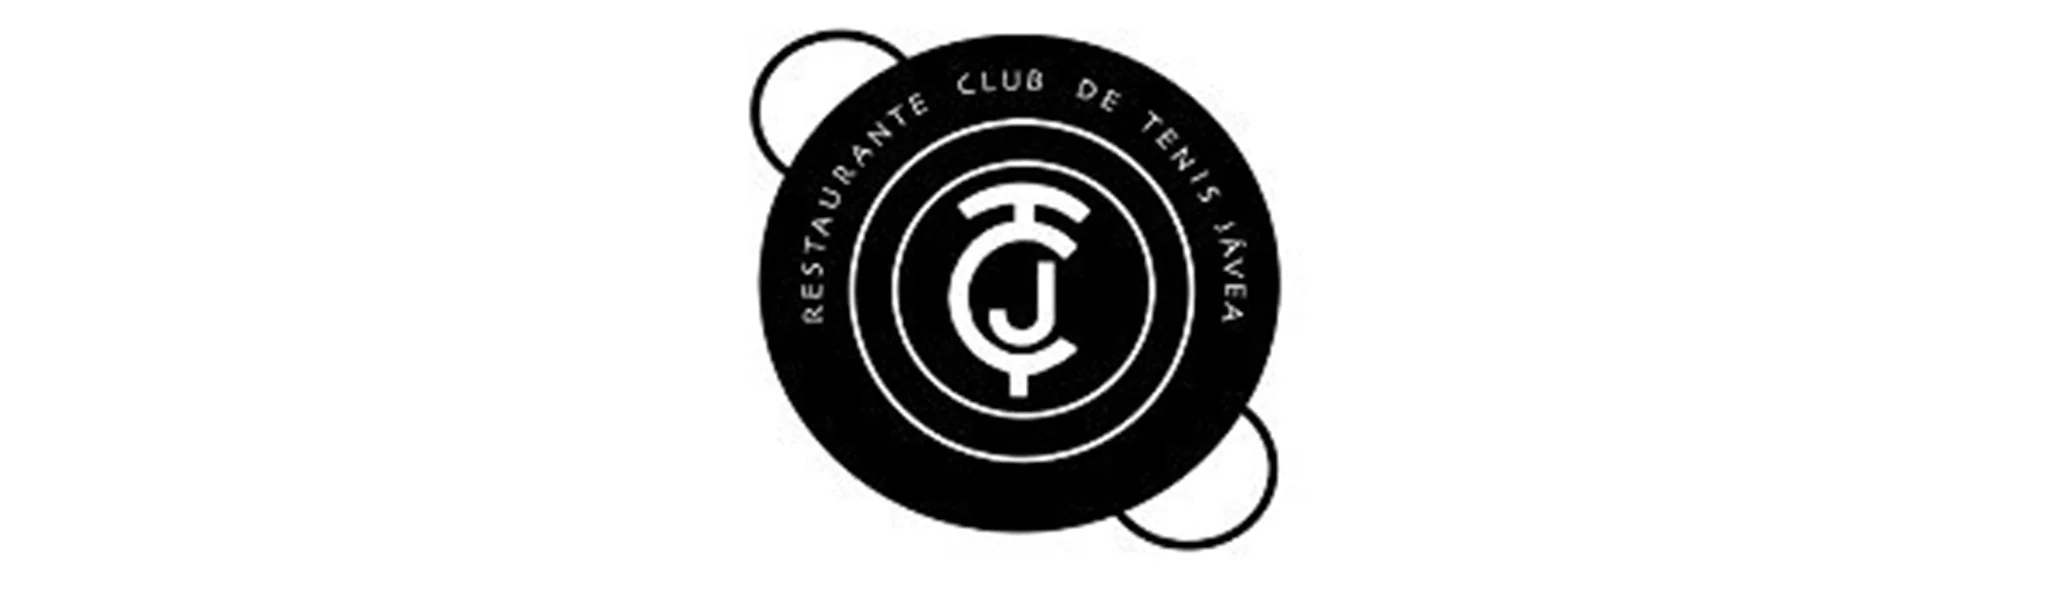 Logotipo del Restaurante Club de Tenis Jávea